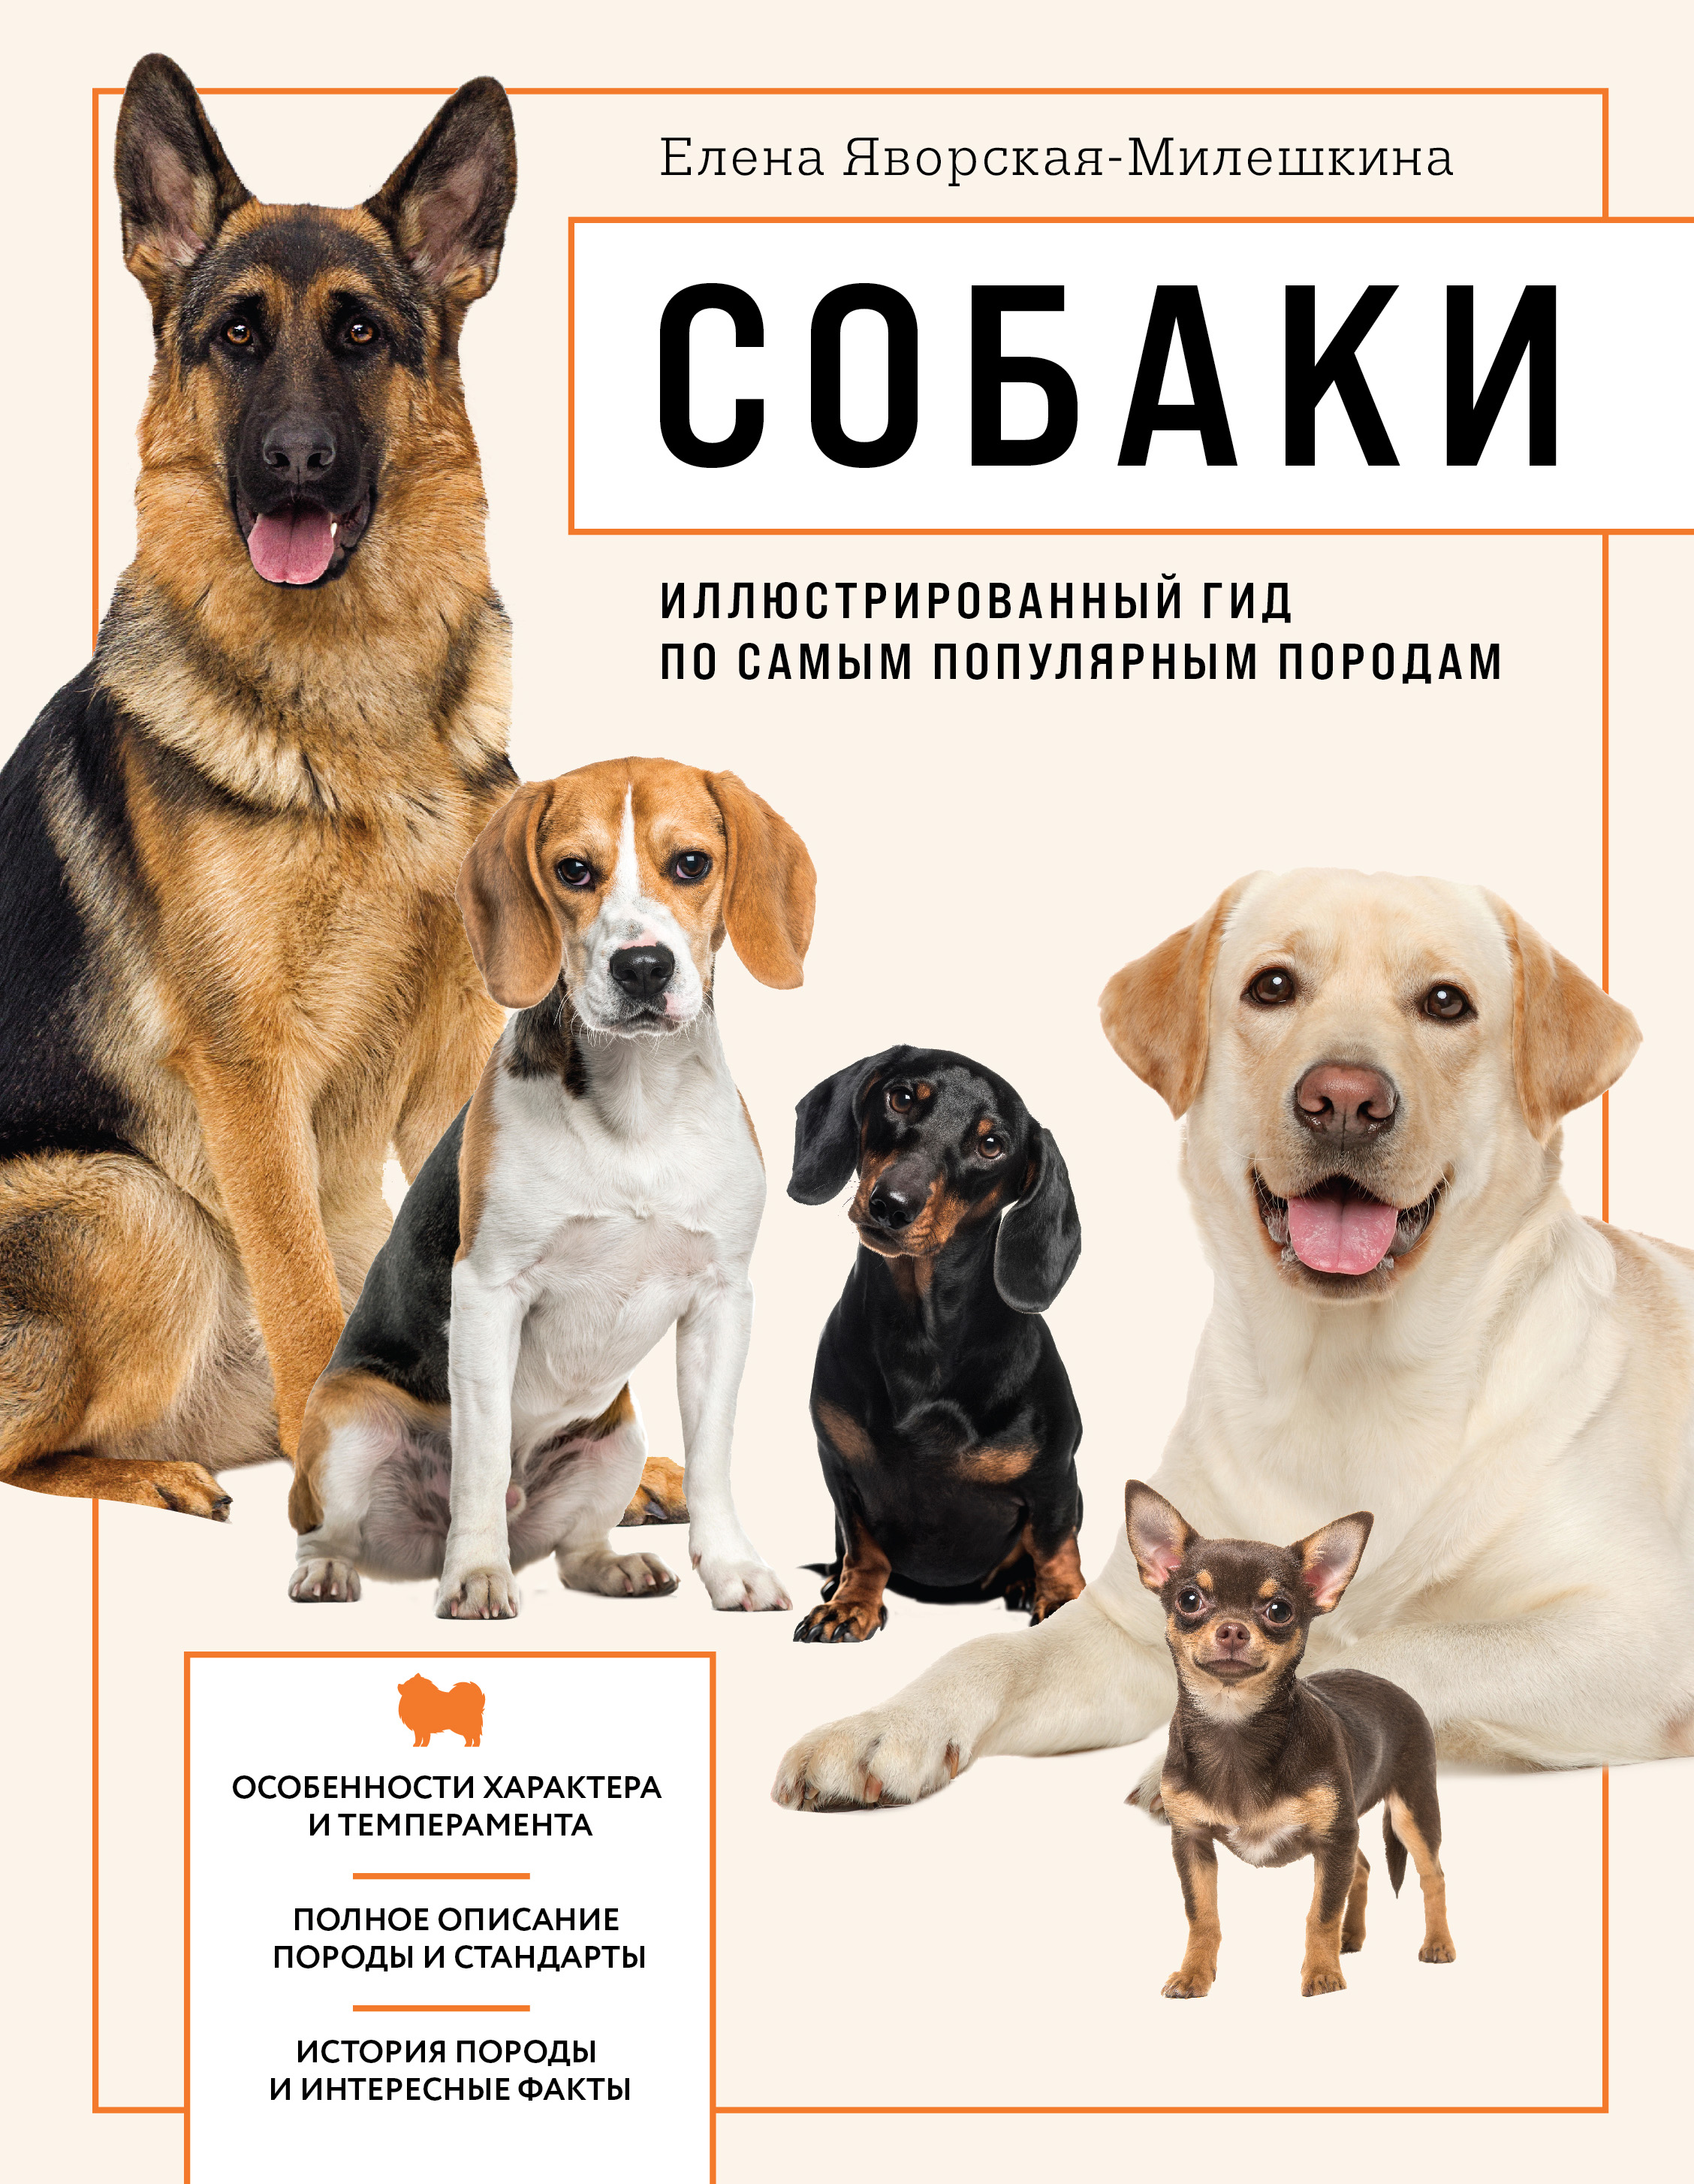 Яворская-Милешкина Е.В. Собаки. Иллюстрированный гид по самым популярным породам 